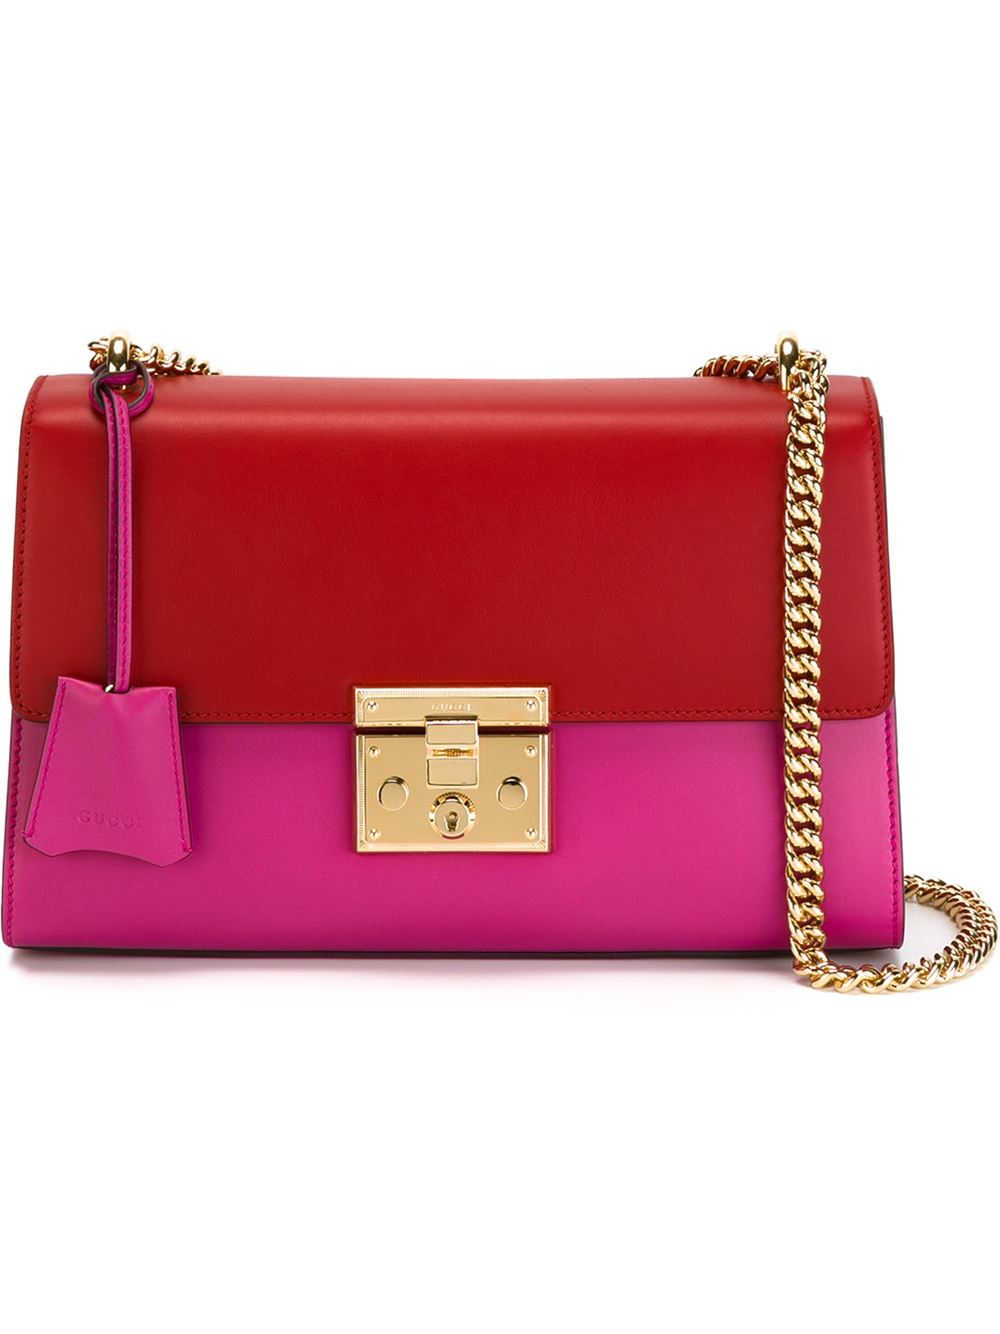 Gucci Padlock Bag Bicolor in Red for Men - Lyst